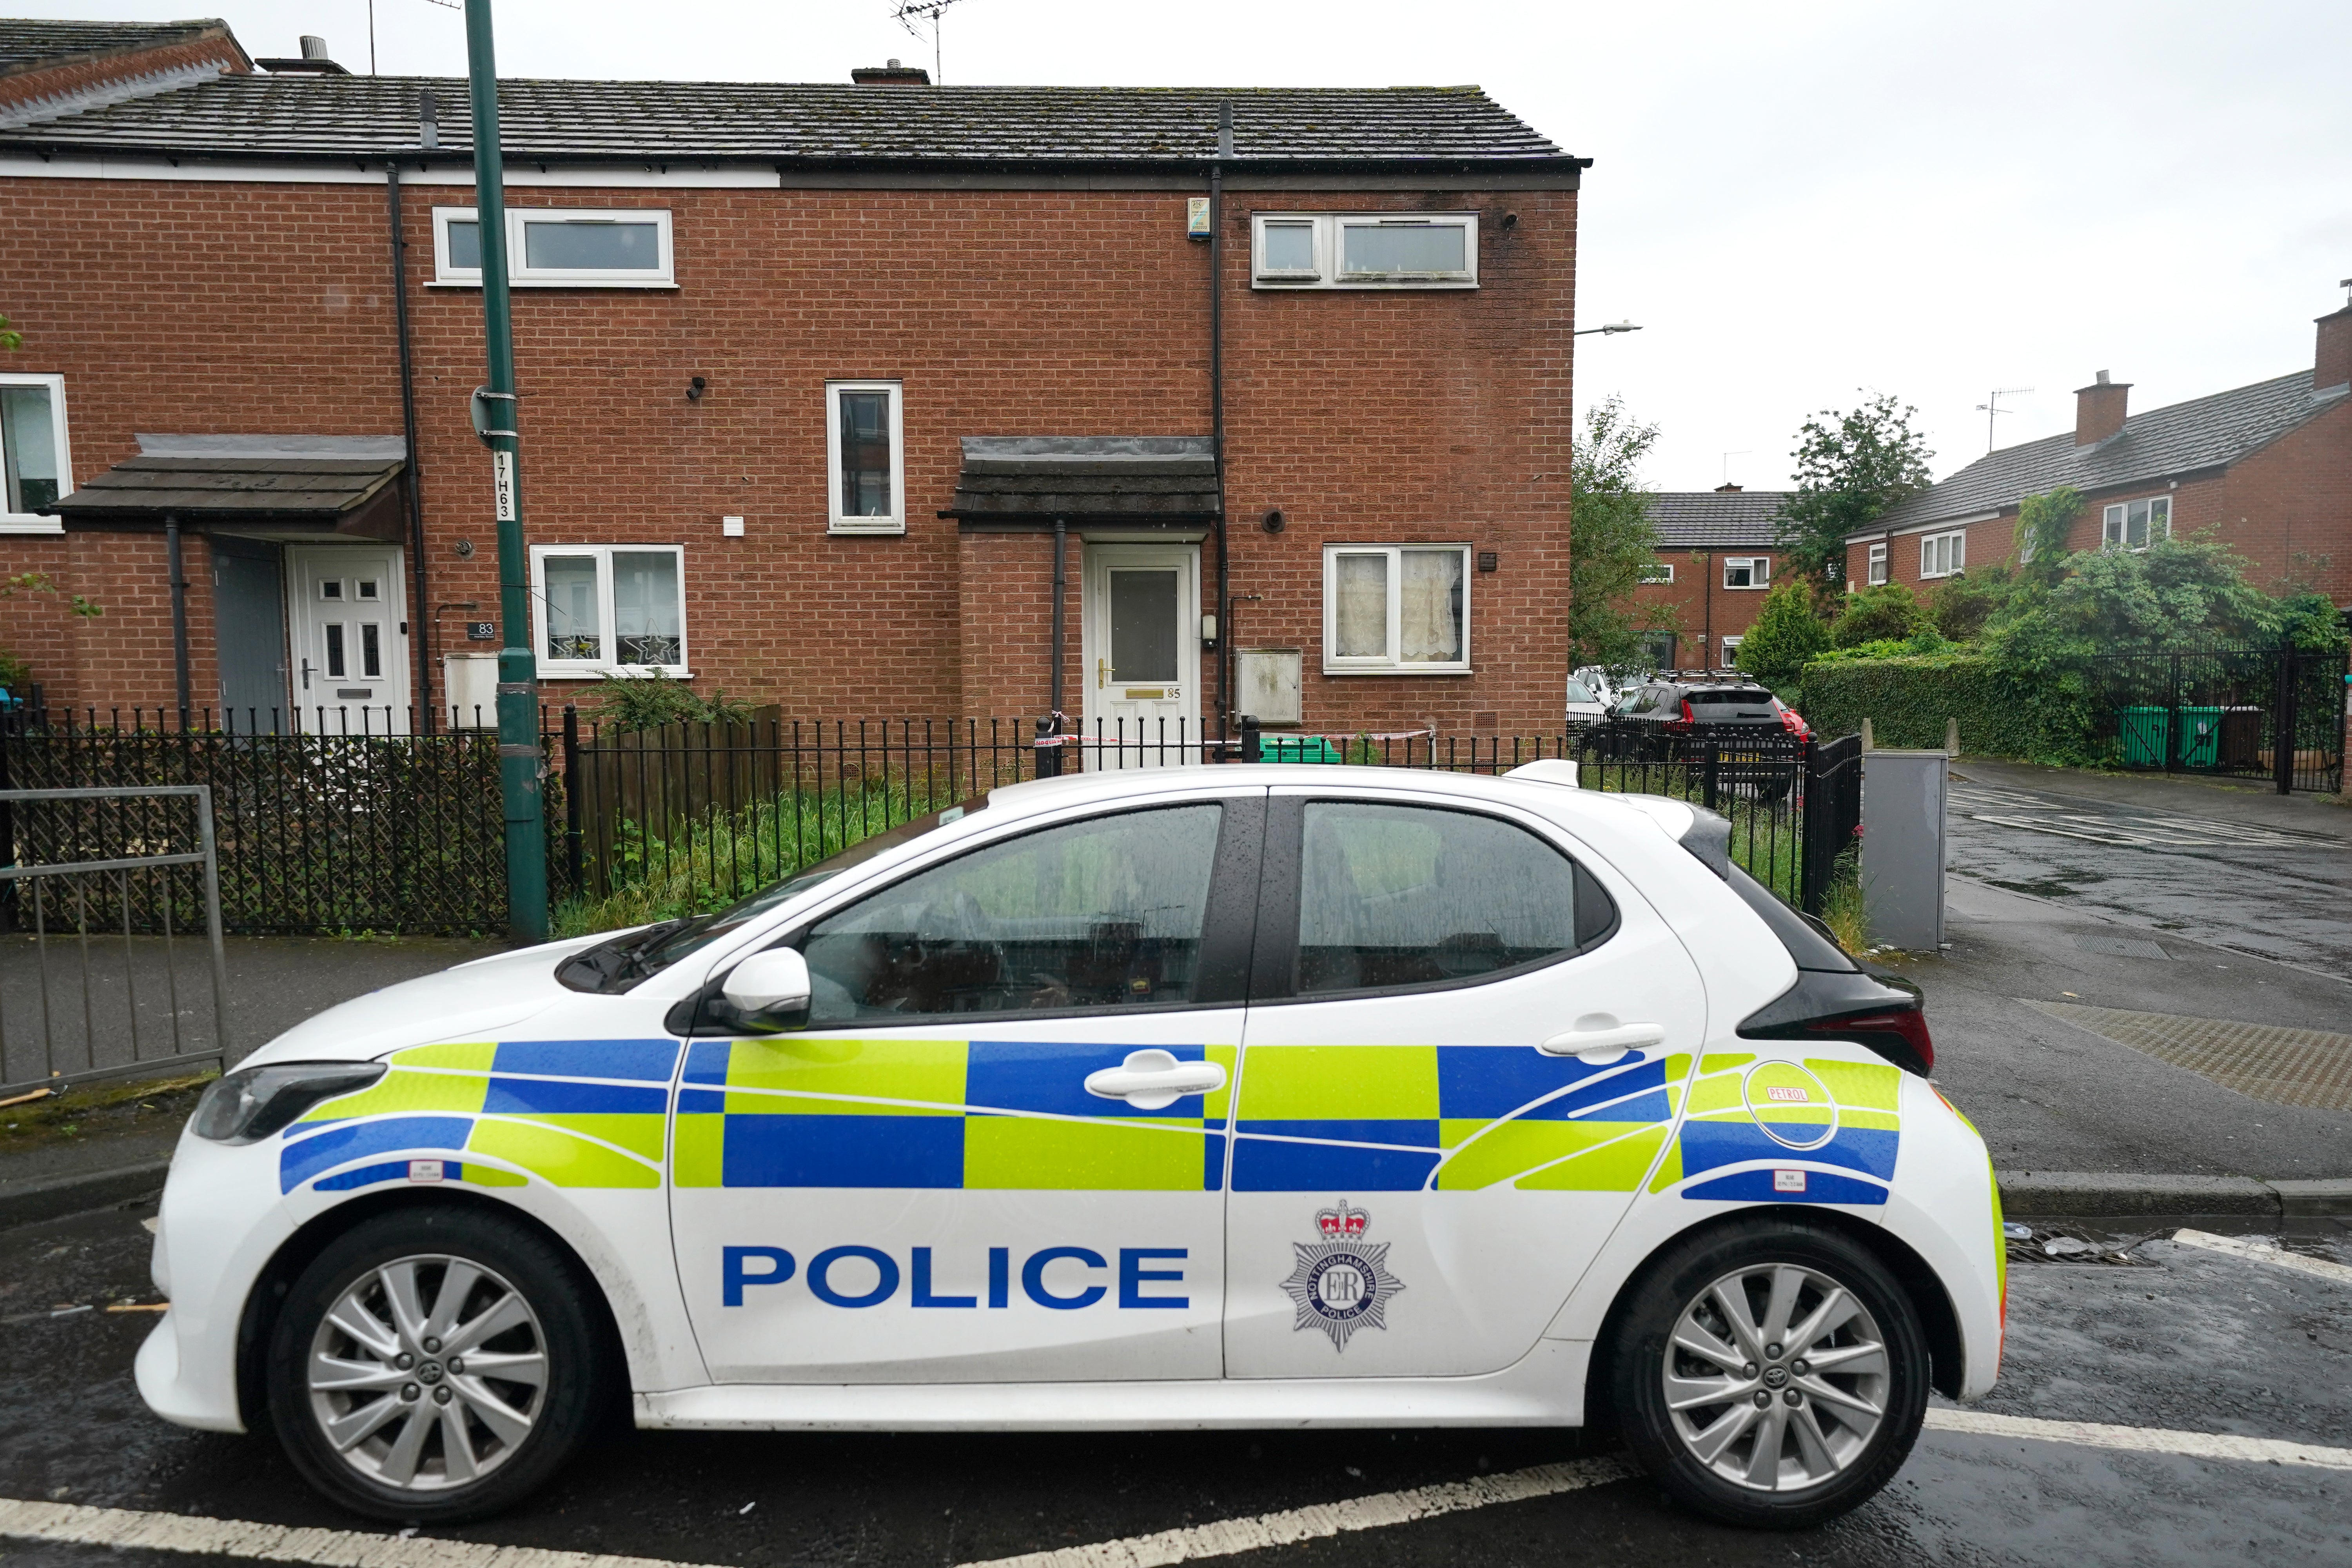 Police at the scene in Radford, Nottingham